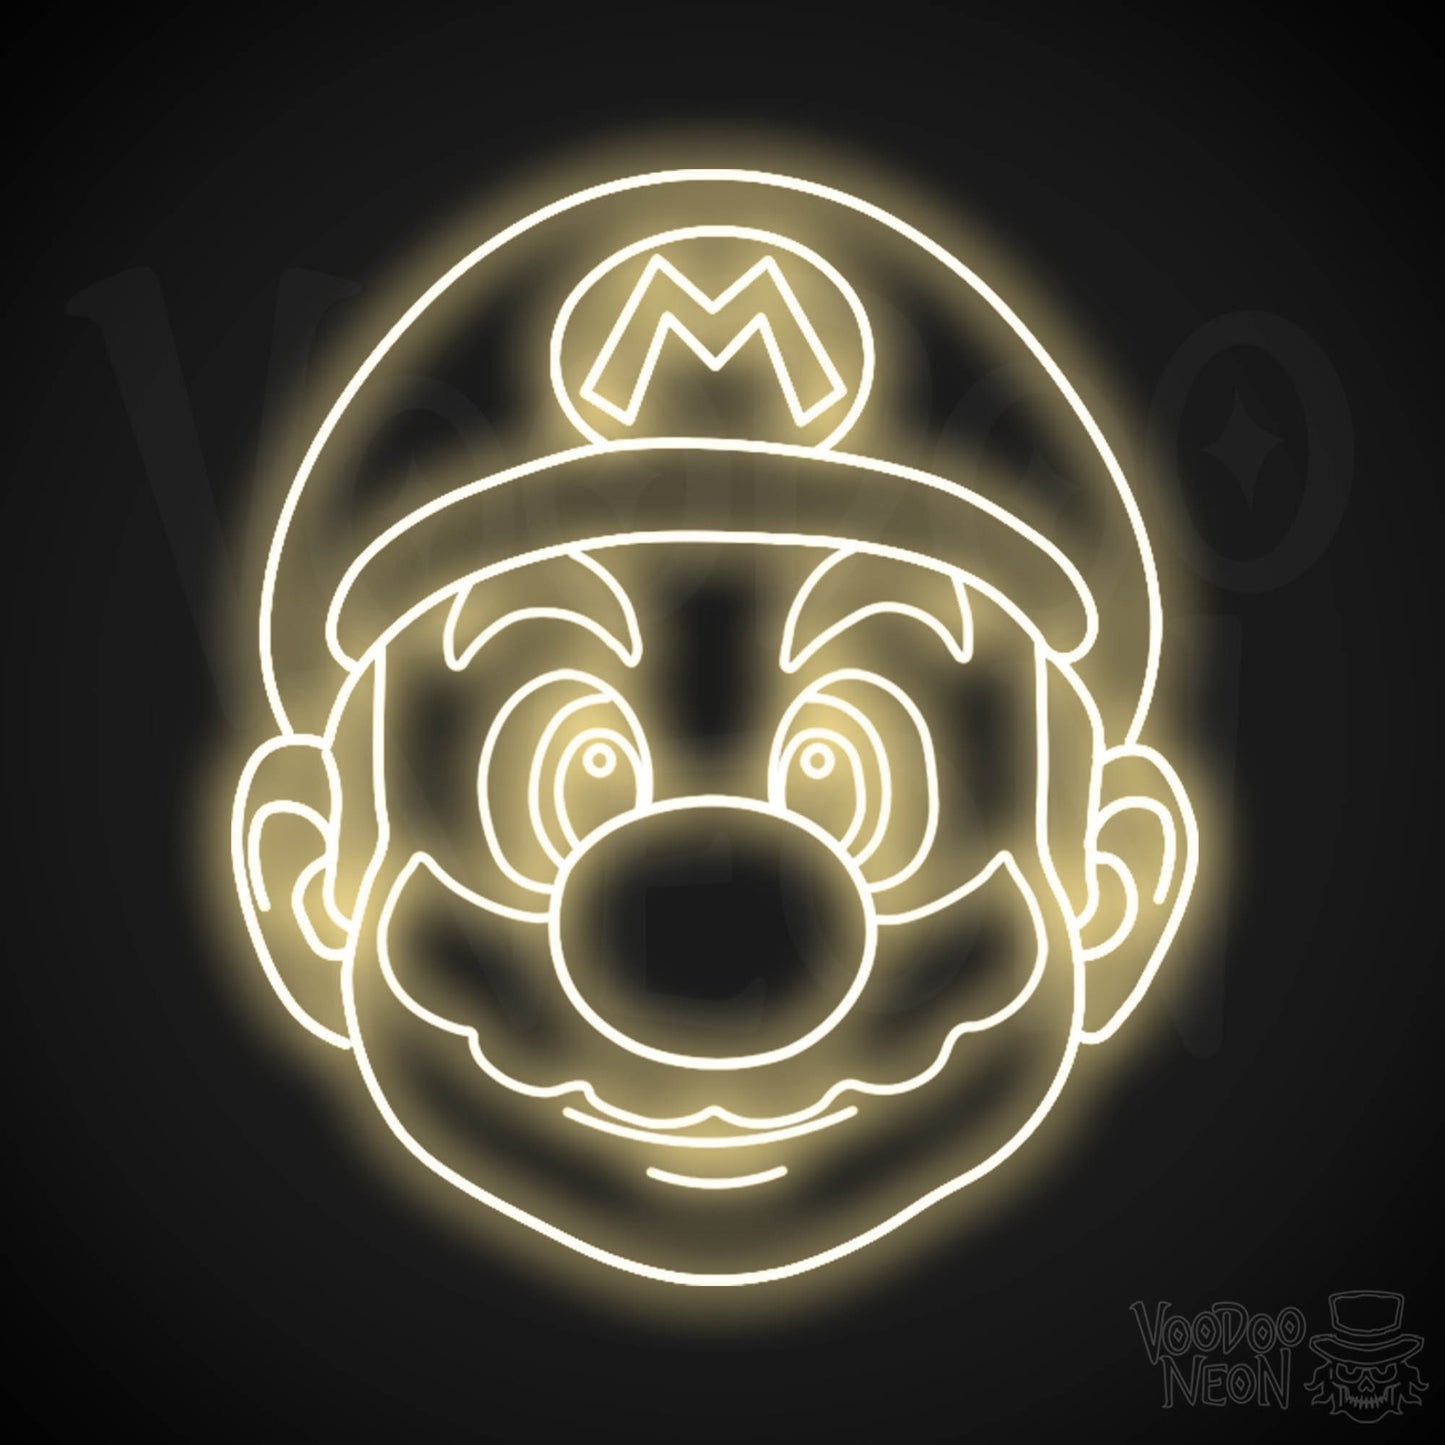 Mario Neon Sign - Mario Sign - Mario Wall Art - LED Neon Wall Art - Color Warm White